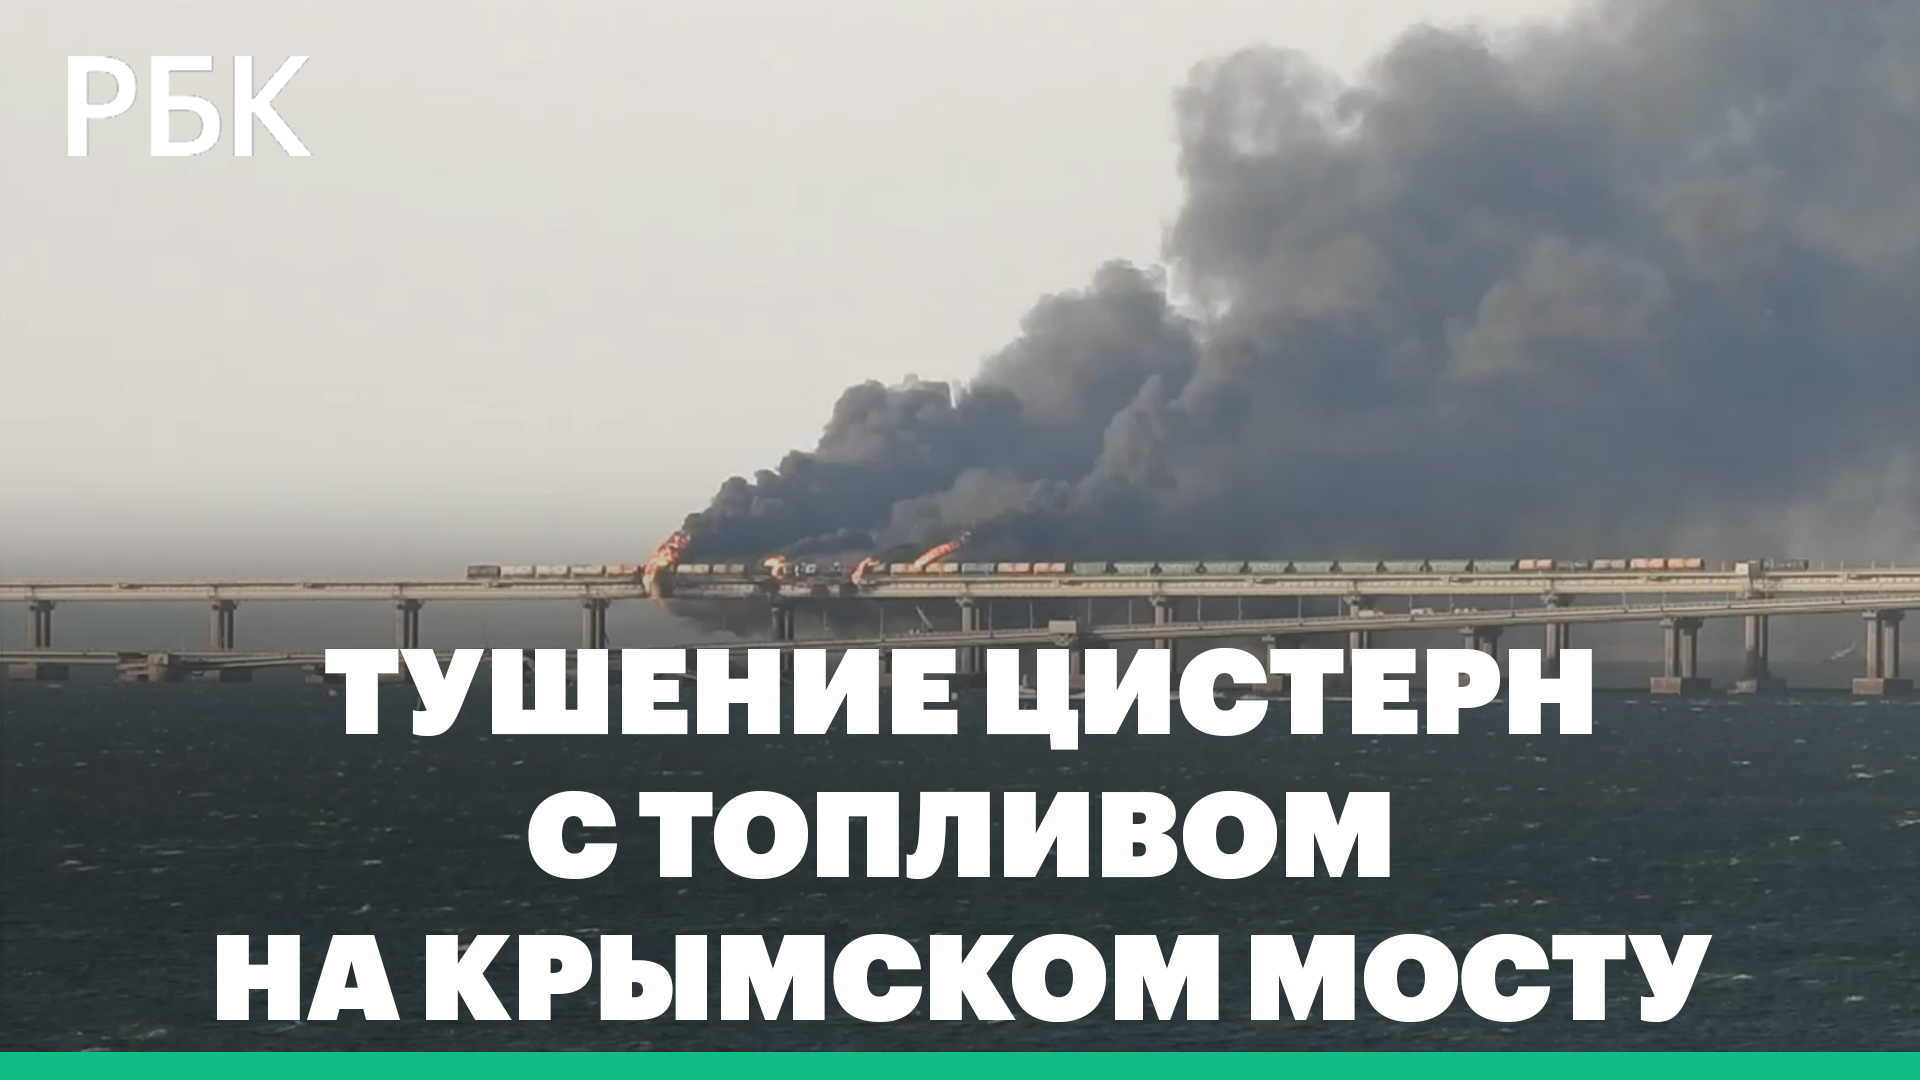 Пламя и мощный дым: как тушили цистерны с топливом после взрыва Крымского моста